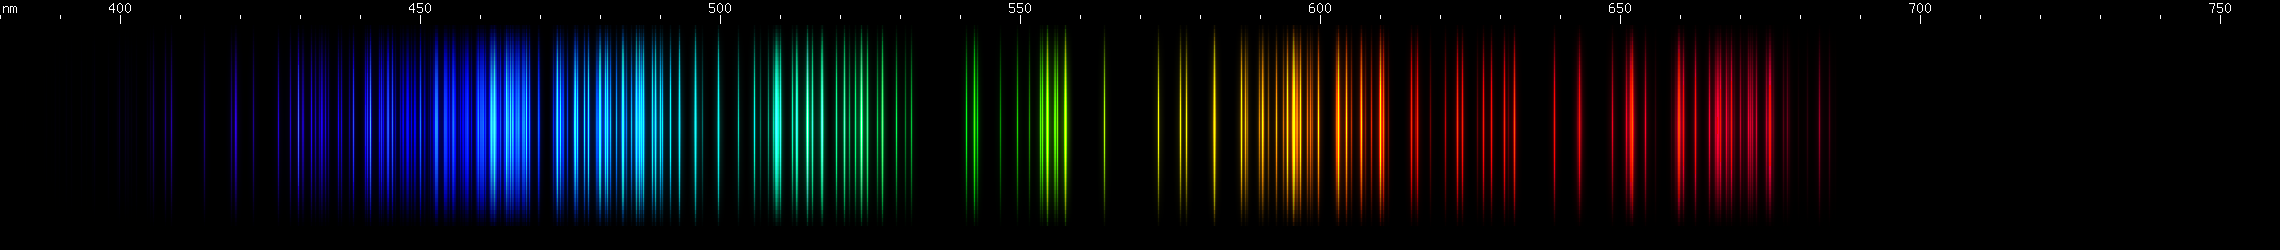 Spectral Lines of Promethium